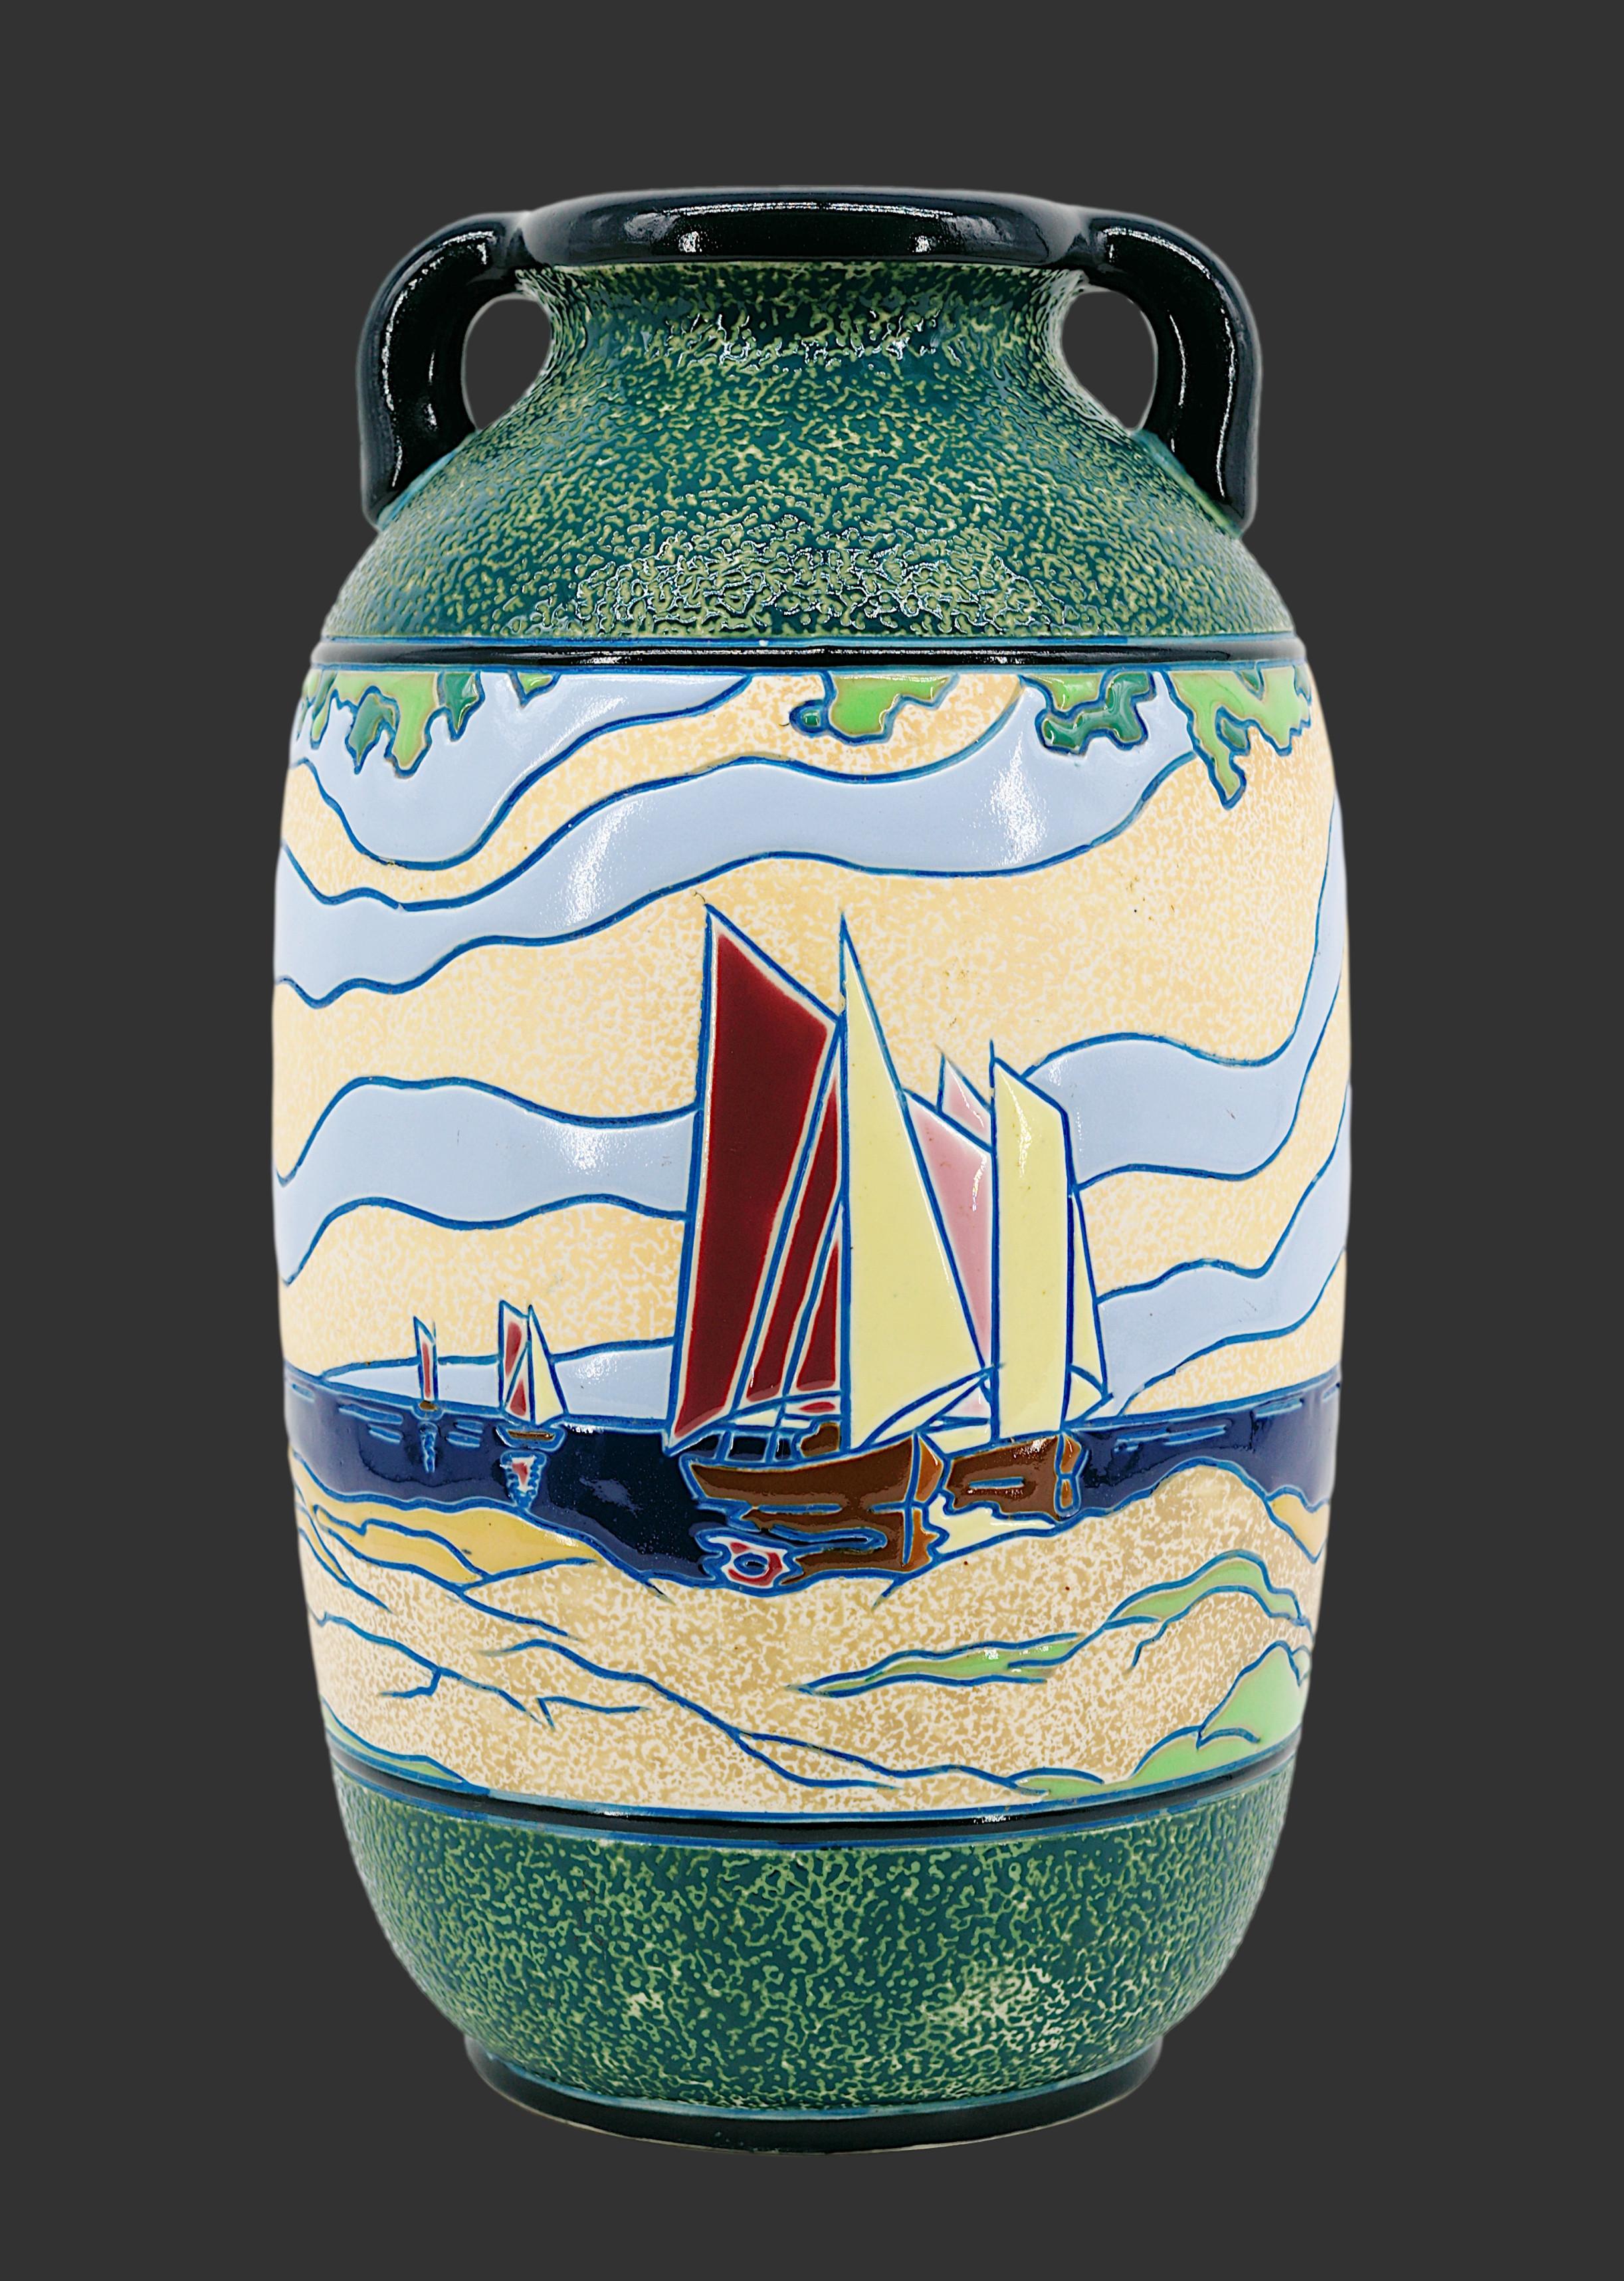 Grand vase Art déco d'AMPHORA (Turn-Teplitz, Bohemia), République tchèque, fin des années 1920. Ce vase a été produit pour la France. Grand vase avec deux petites anses. Décor tournant émaillé Art déco représentant des bateaux de pêche rentrant au